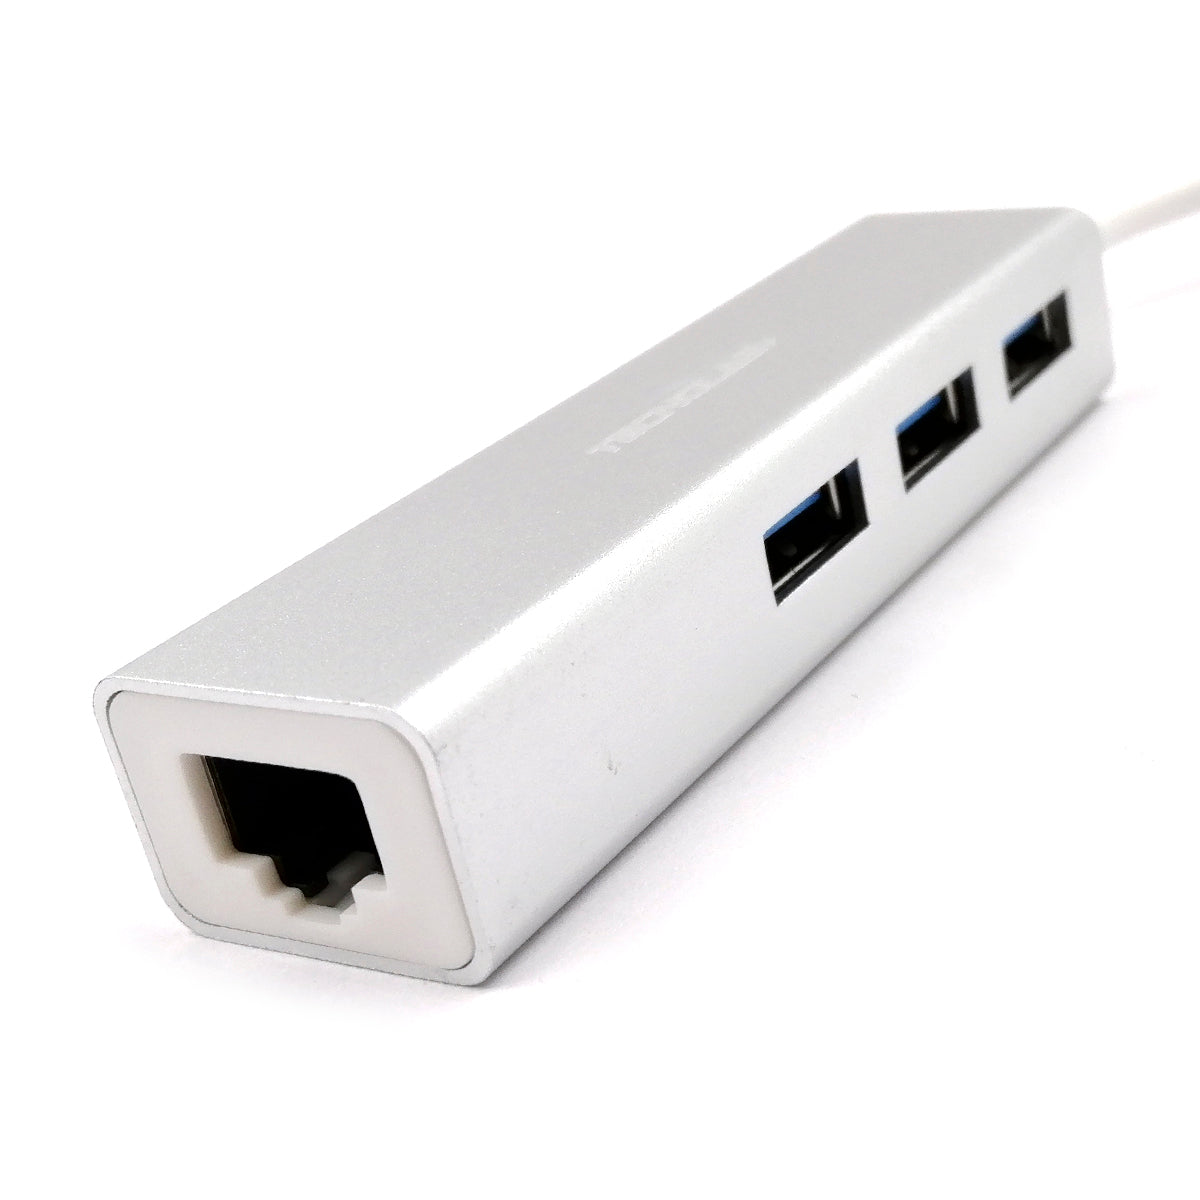 HUB TIPO C TECNOLAB CON 3 USB 3.0 - RJ45 TL069